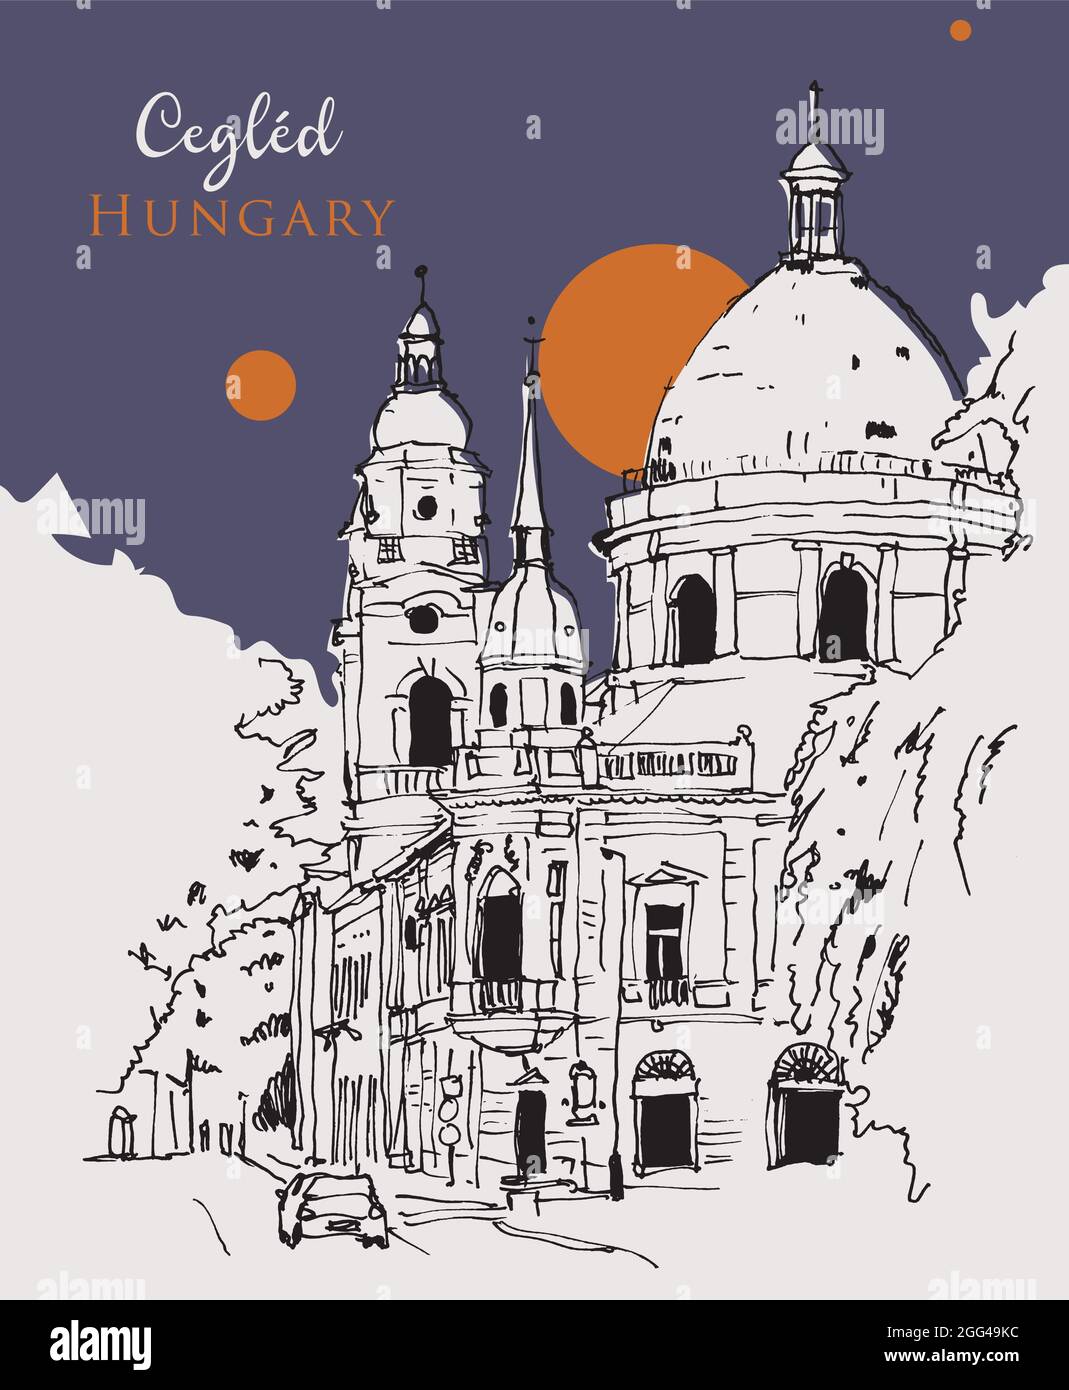 Disegno a mano vettoriale della Chiesa Calvinista di Cegled, Ungheria Illustrazione Vettoriale